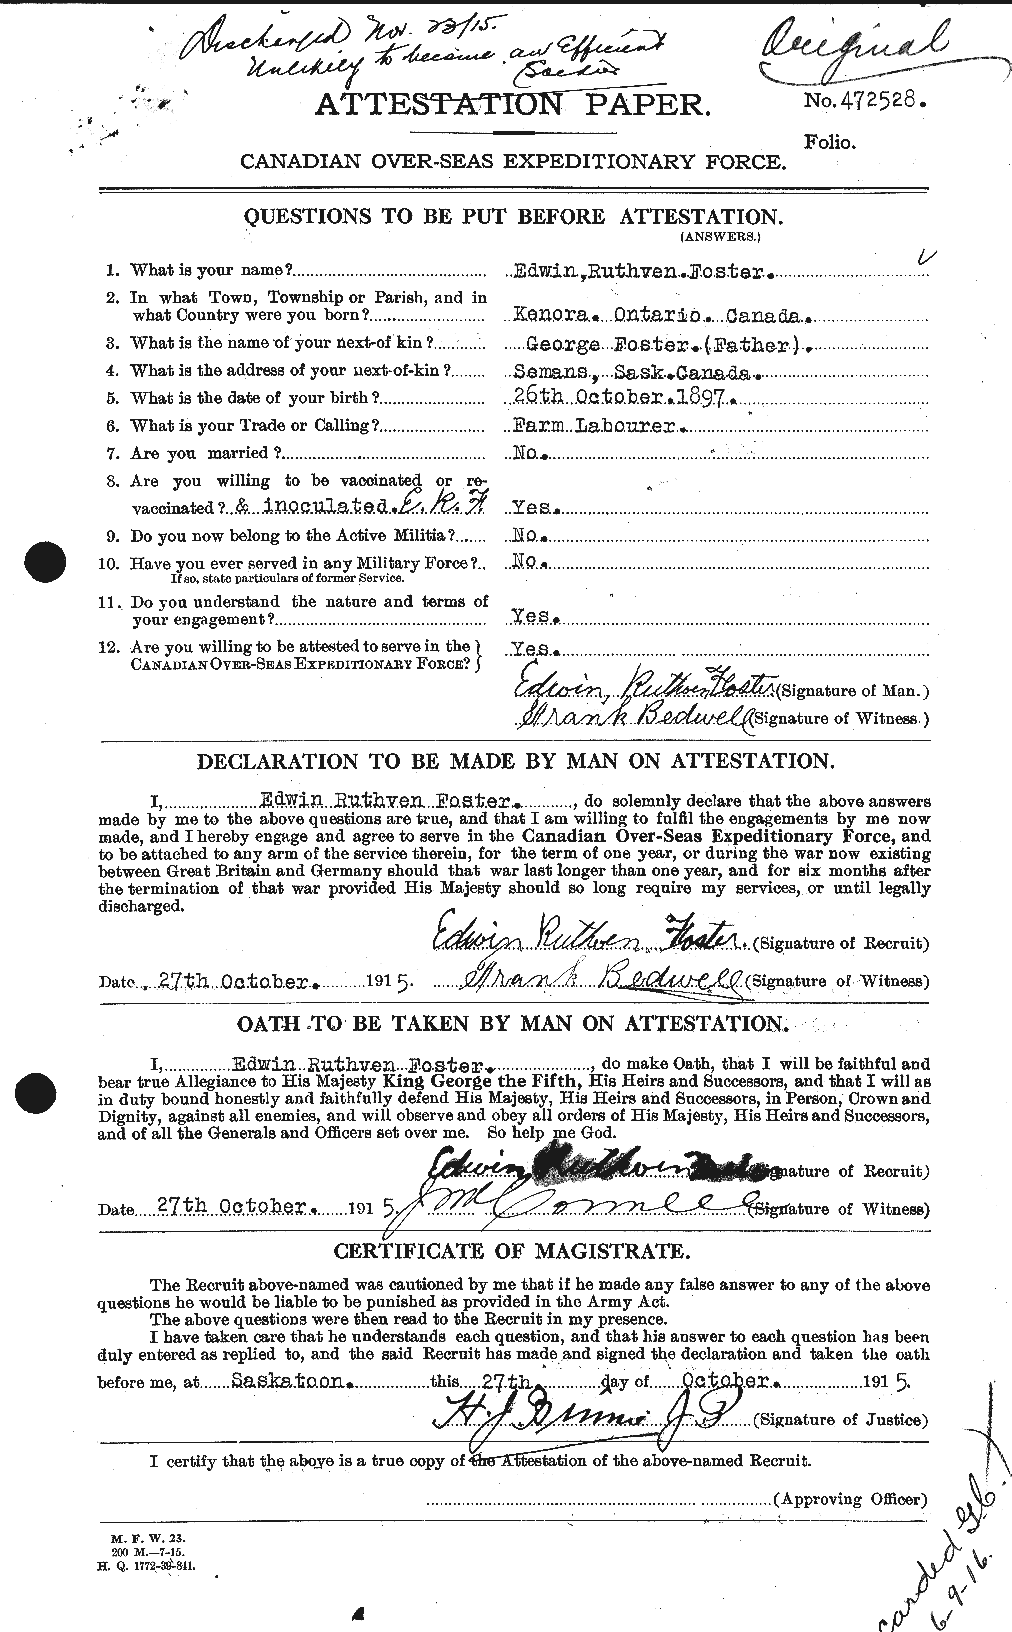 Dossiers du Personnel de la Première Guerre mondiale - CEC 330594a